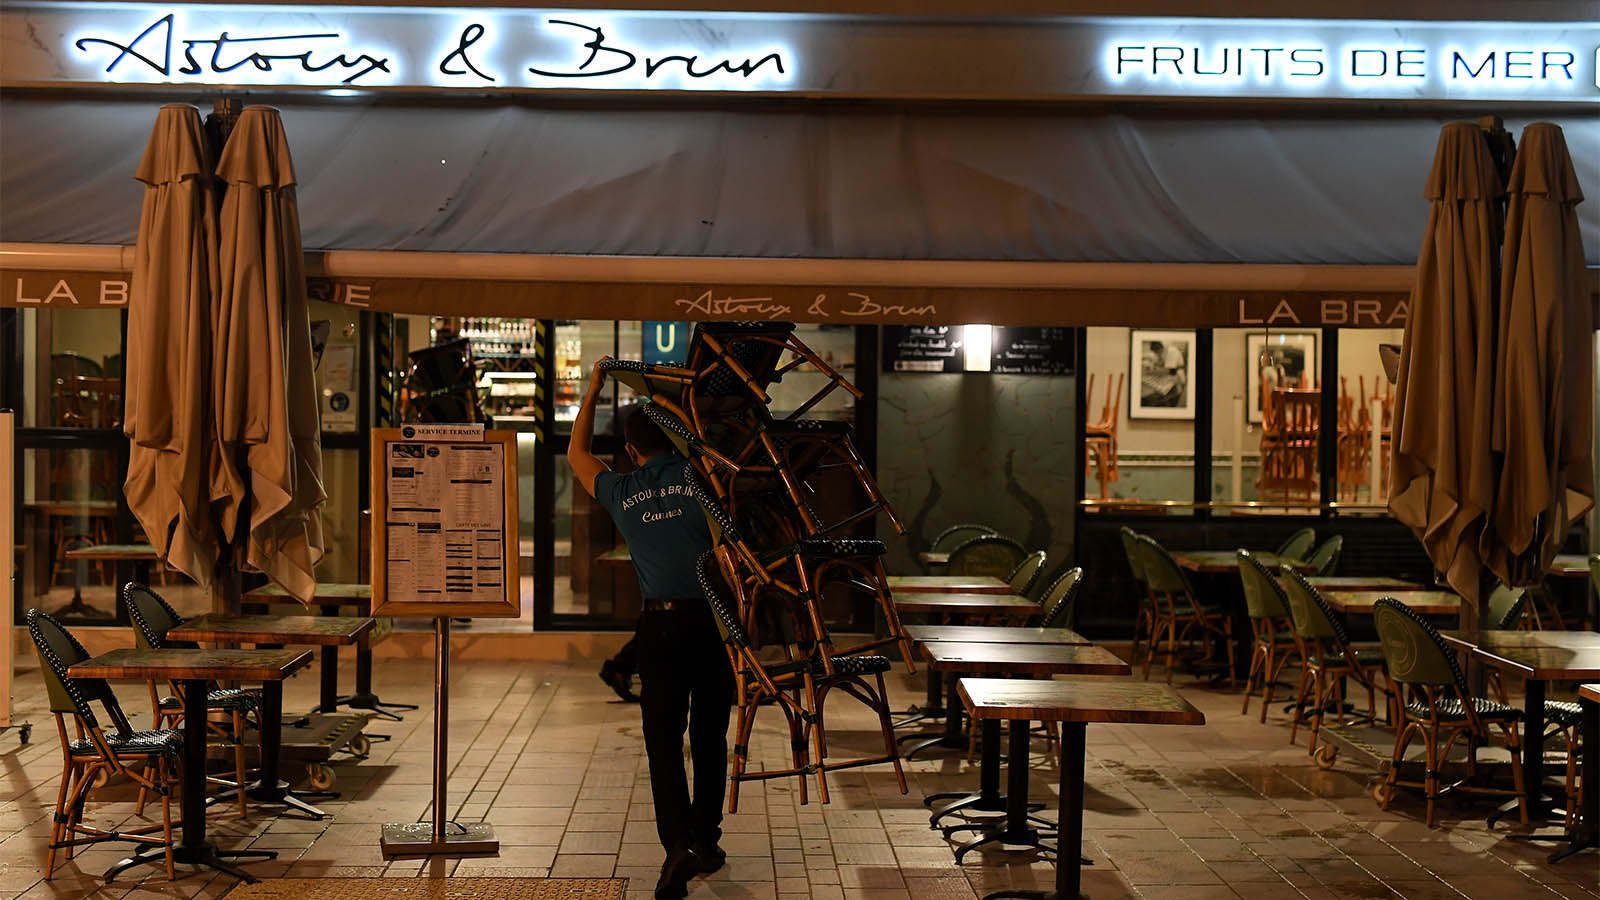 עובד מסעדה סוגר לקראת העוצר הלילי בעיר קאן בצרפת (צילום: Pascal Le Segretain/Getty Images)